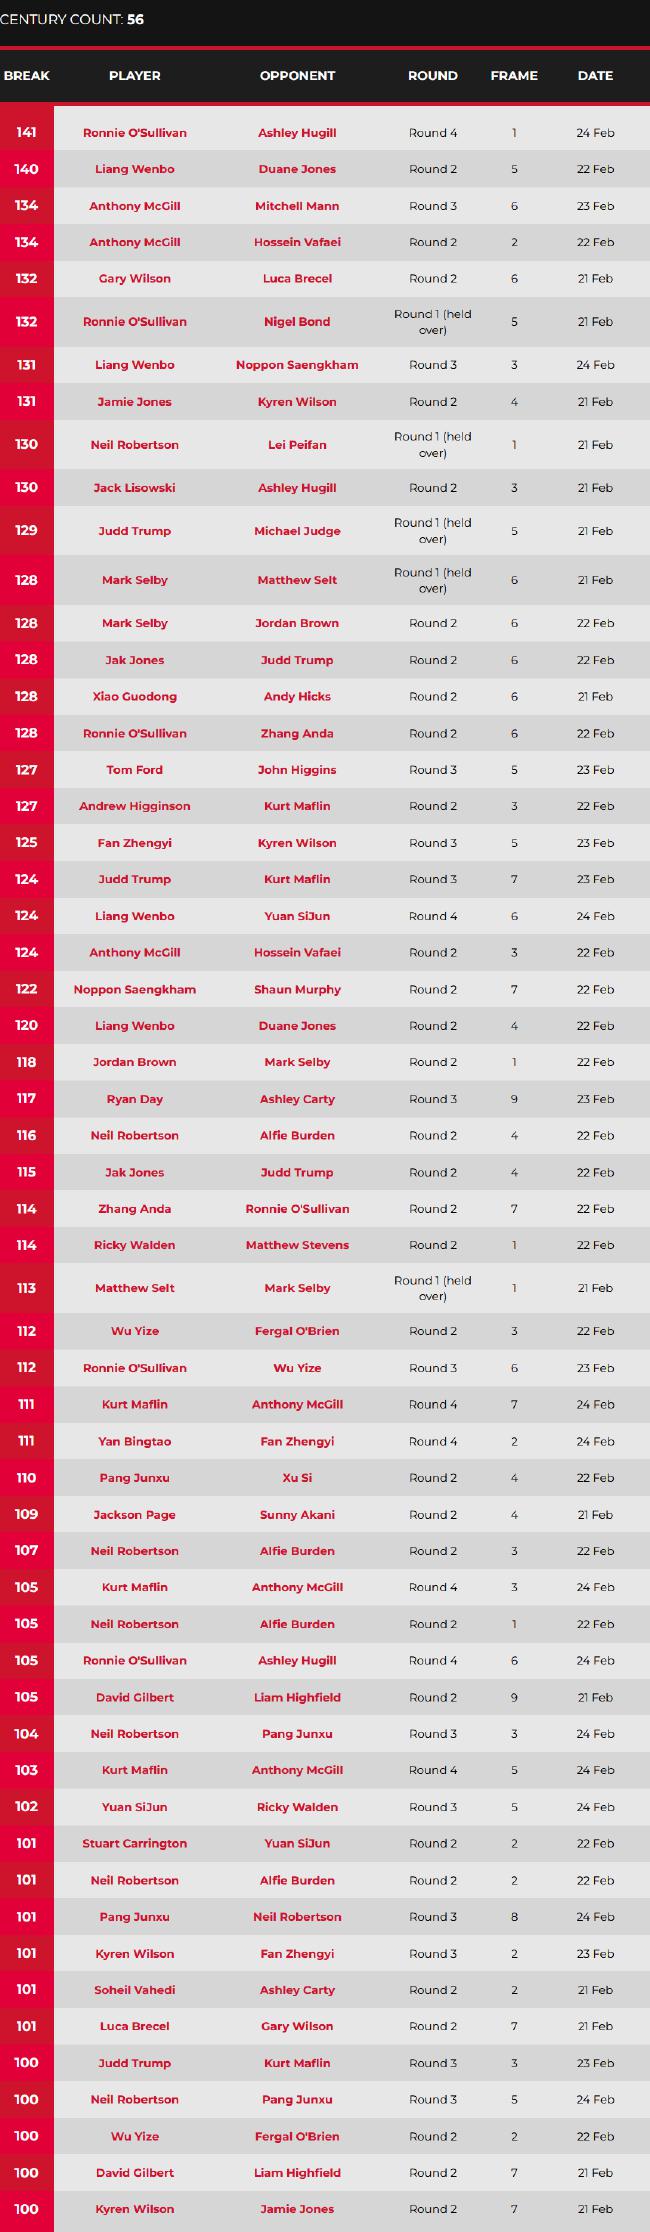 欧洲大师赛奥沙利文轰单杆141 成8强唯一TOP10种子(2)